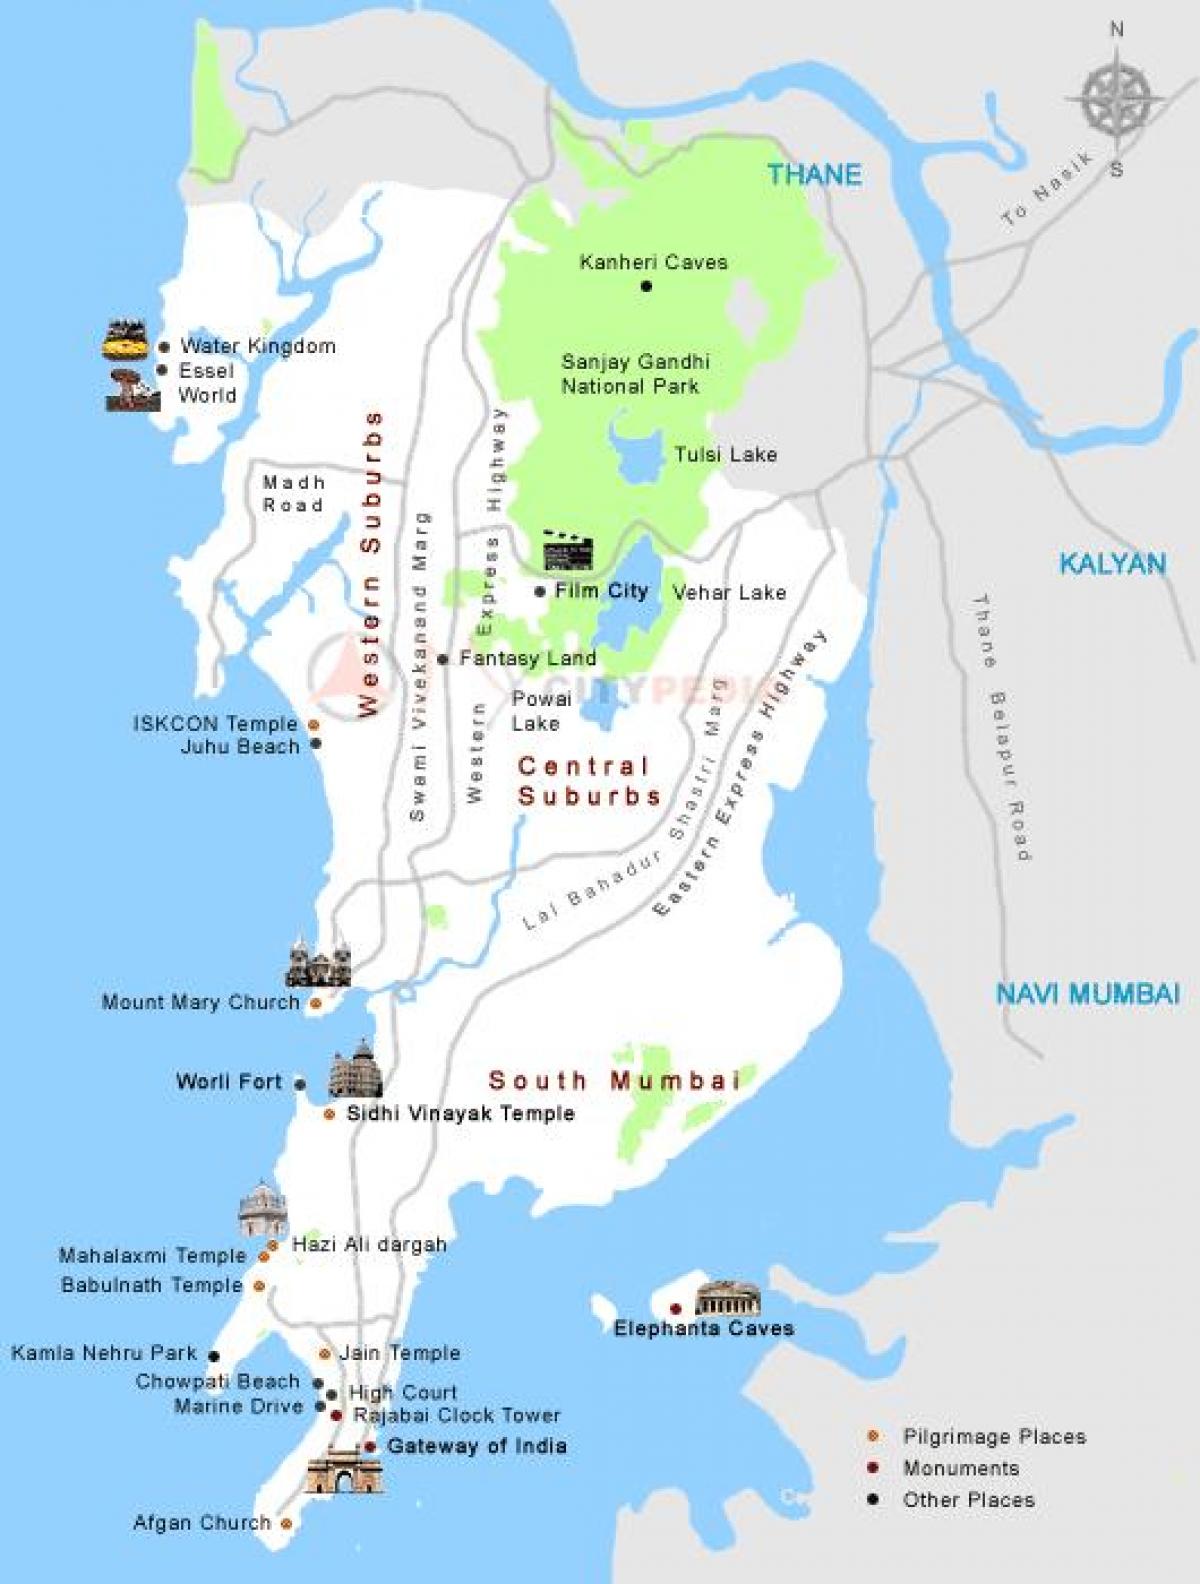 Mumbai darshan kaart plaatsen